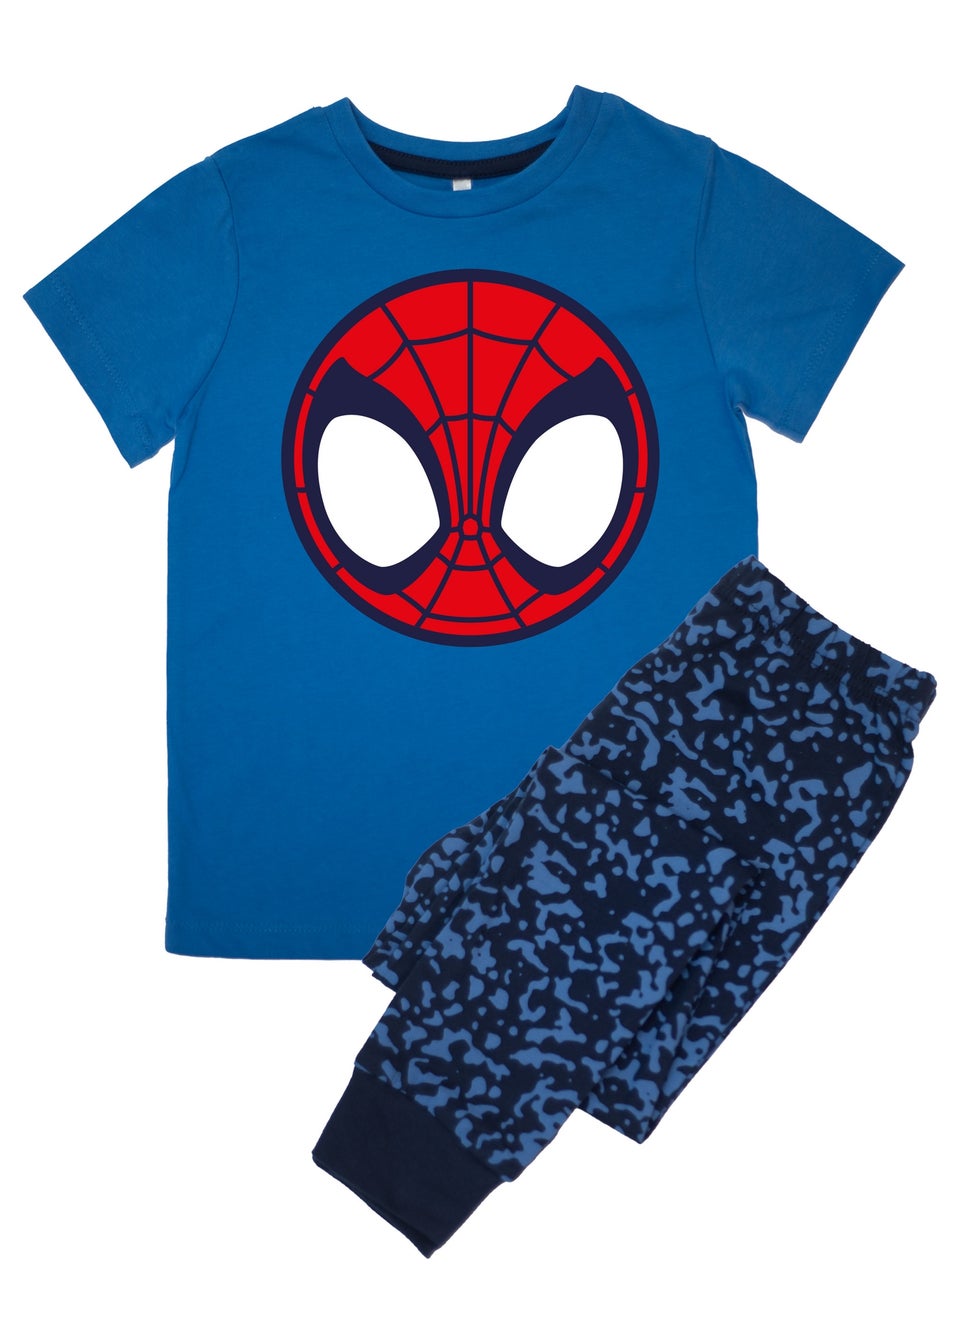 Marvel Spider-Man Icon Kids Royal Blue Camo Pyjamas (3-8 Years)